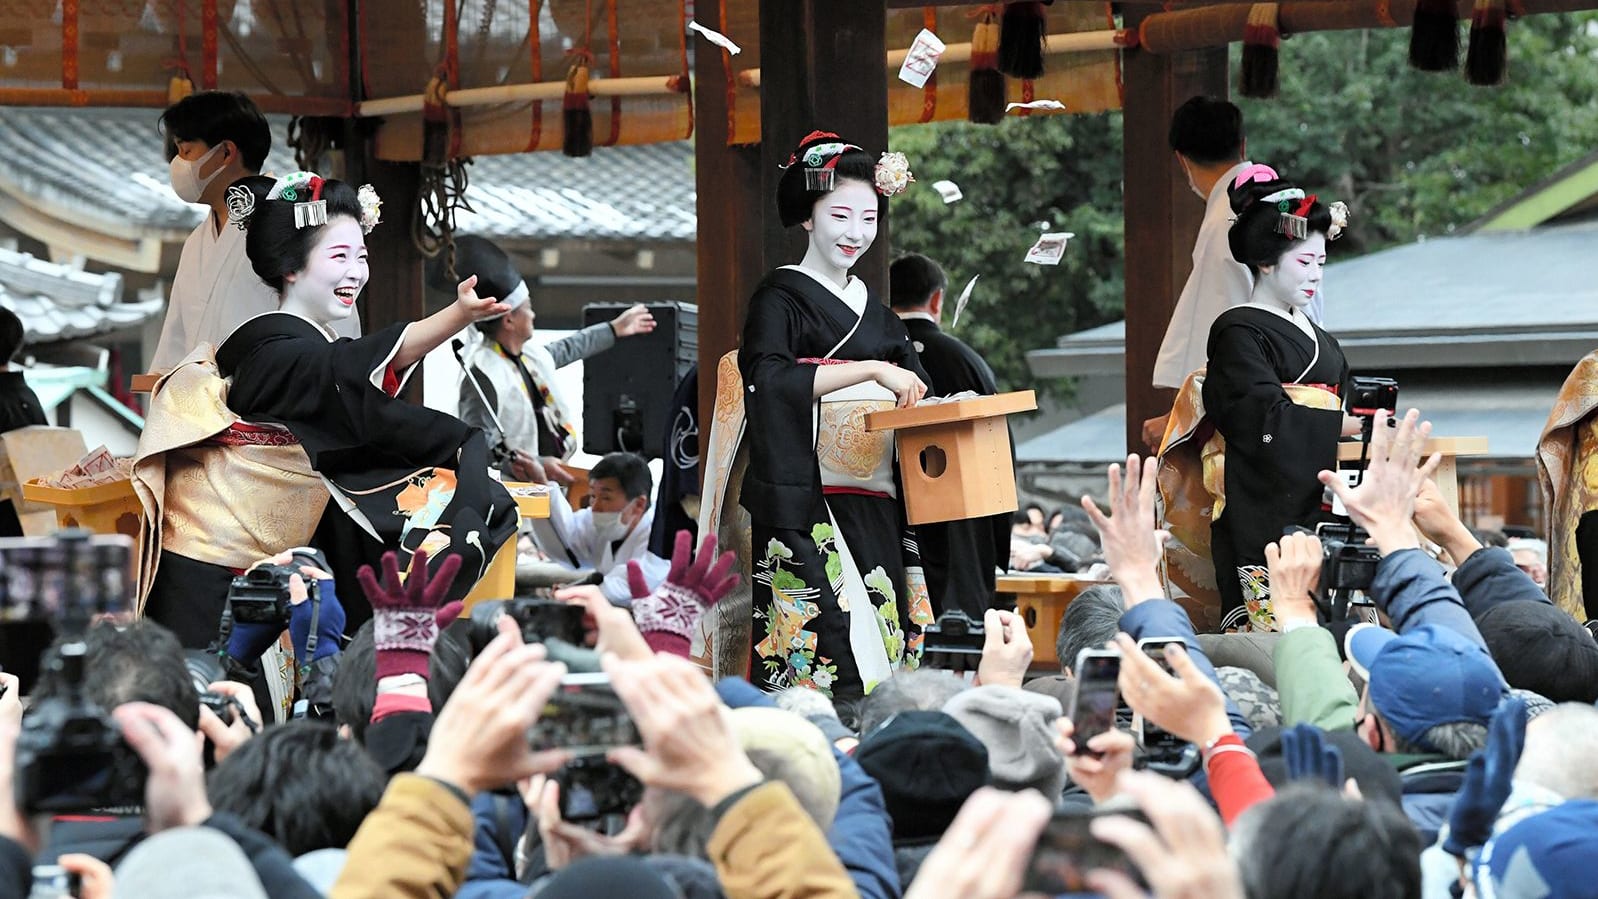 فتيات "الغيشا".. هكذا تحيا صورة اليابان الأيقونية في ظل كورونا  